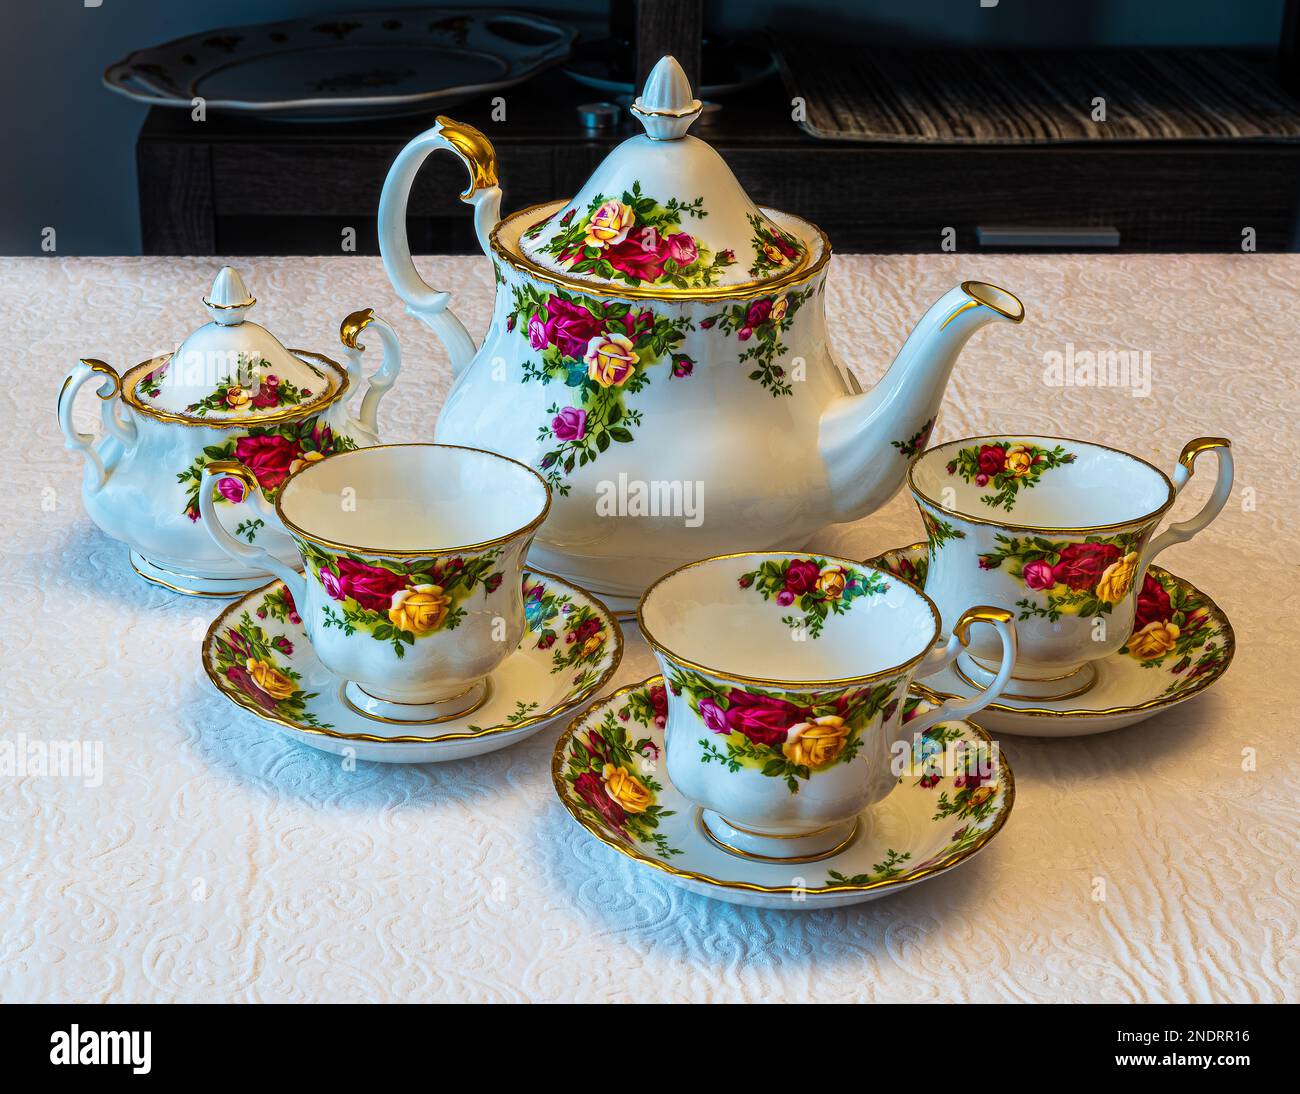 Royal Albert Porzellan Geschirr, Kaffeetasse. Handbemalte Blumen. Kann zur Veranschaulichung von Porzellangerichten in Zeitungen verwendet werden. Stockfoto